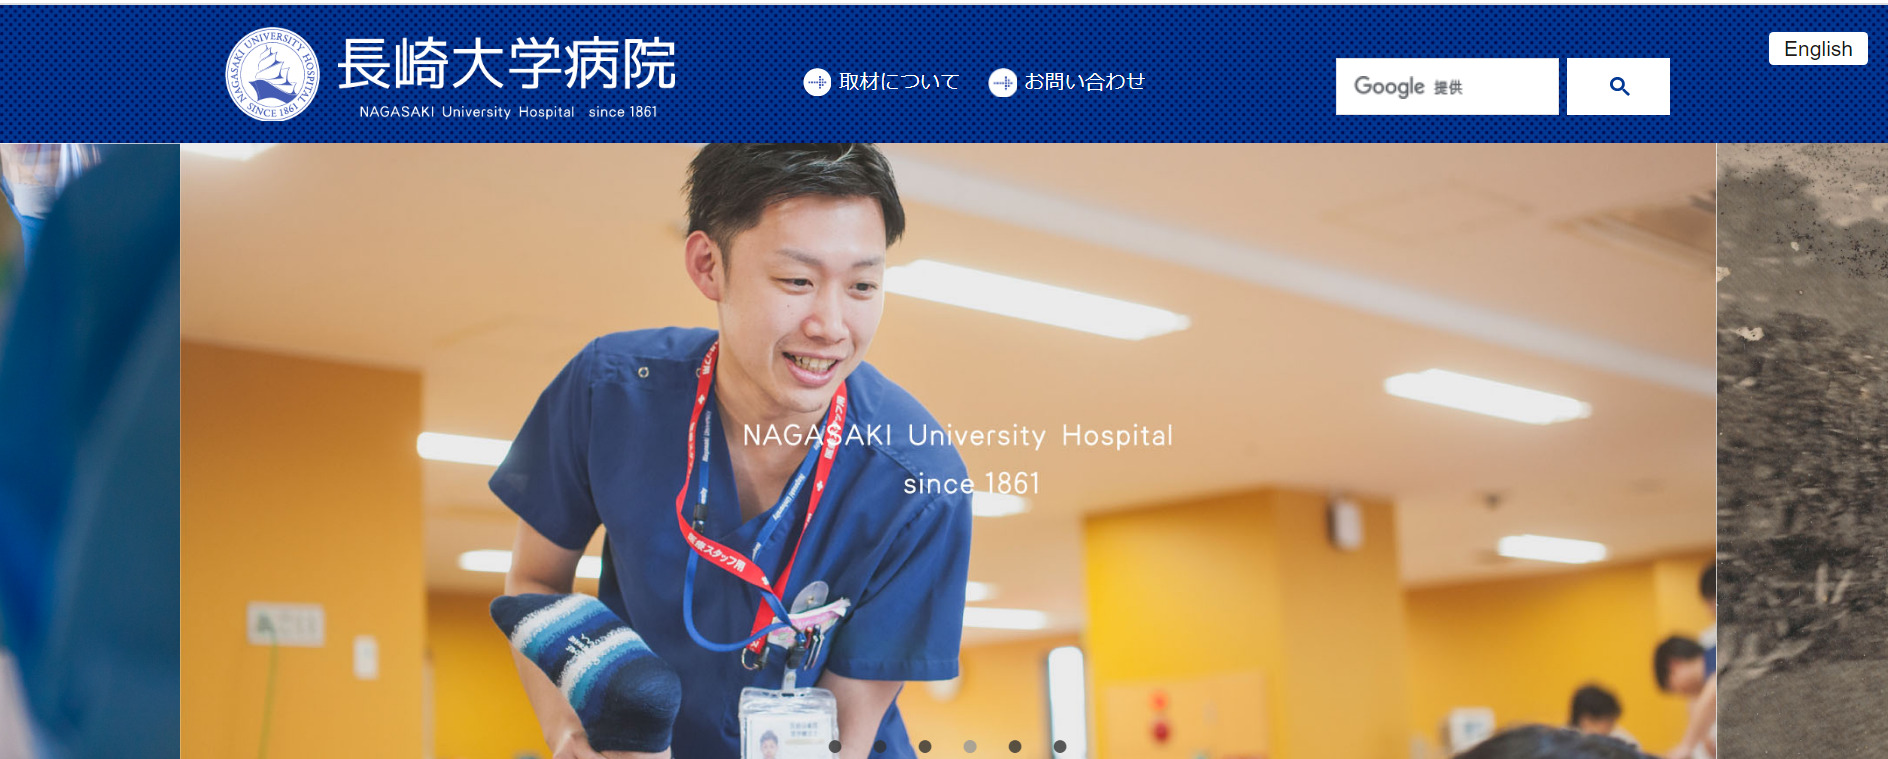 長崎大学病院のトップページ